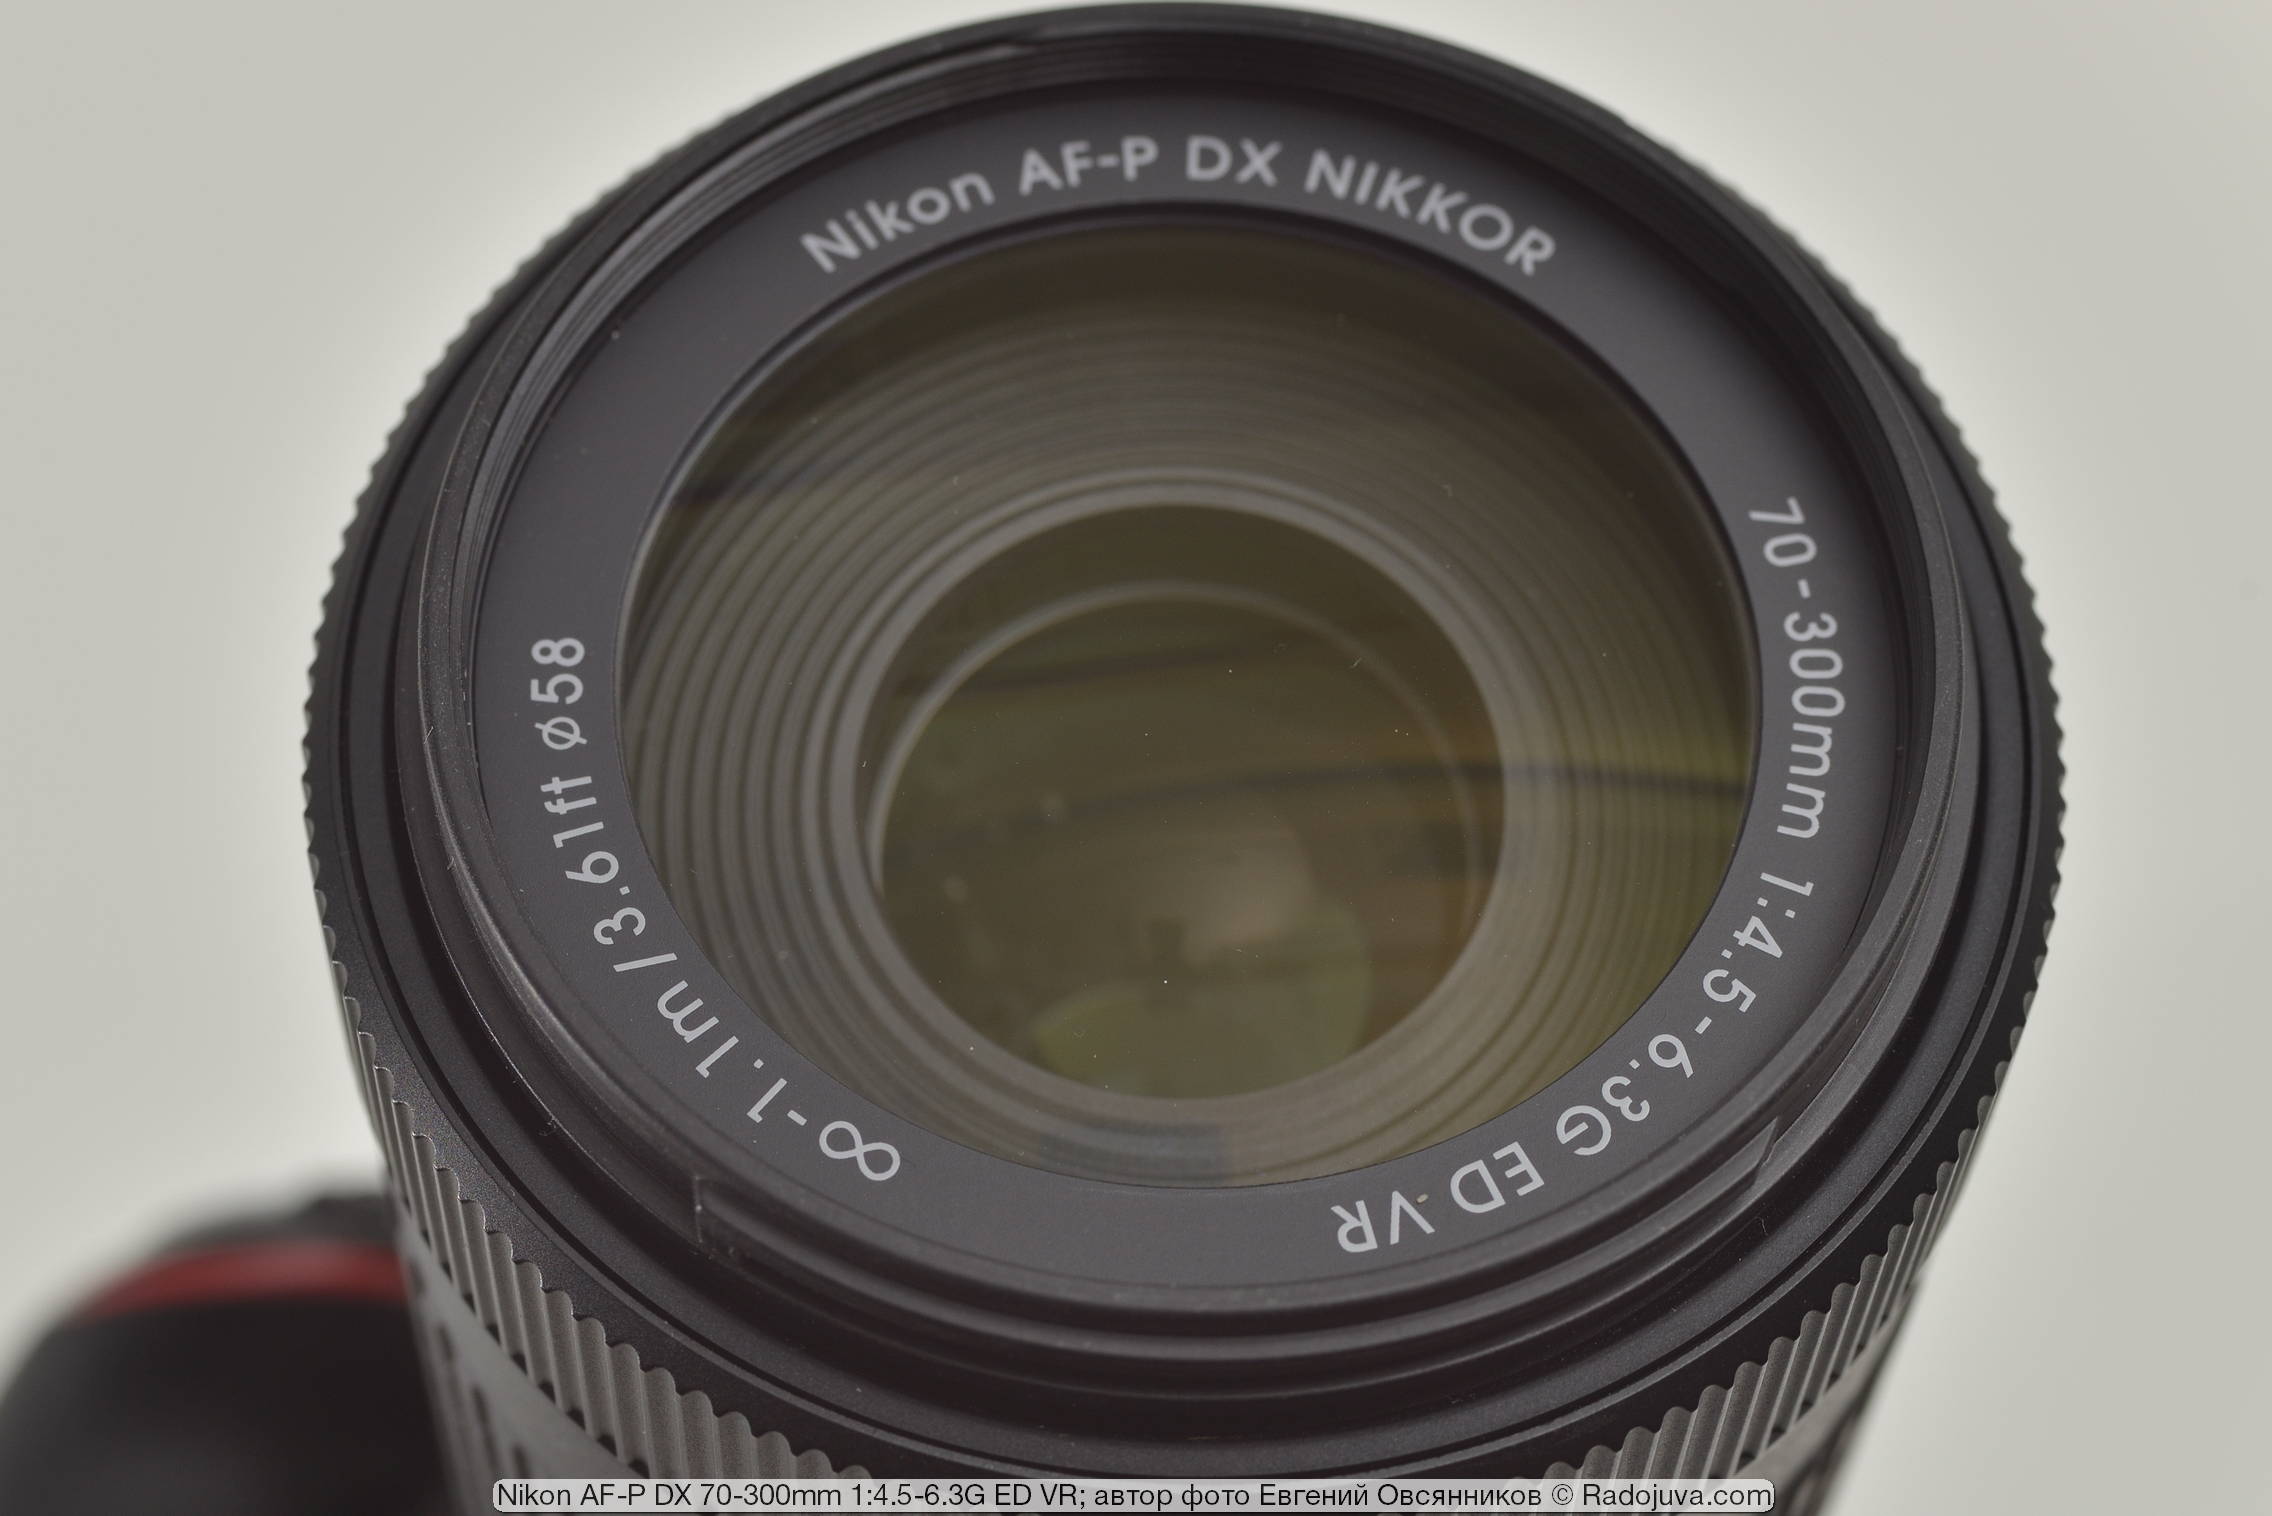 Nikon AF-P DX 70-300 mm 1: 4.5-6.3G ED VR